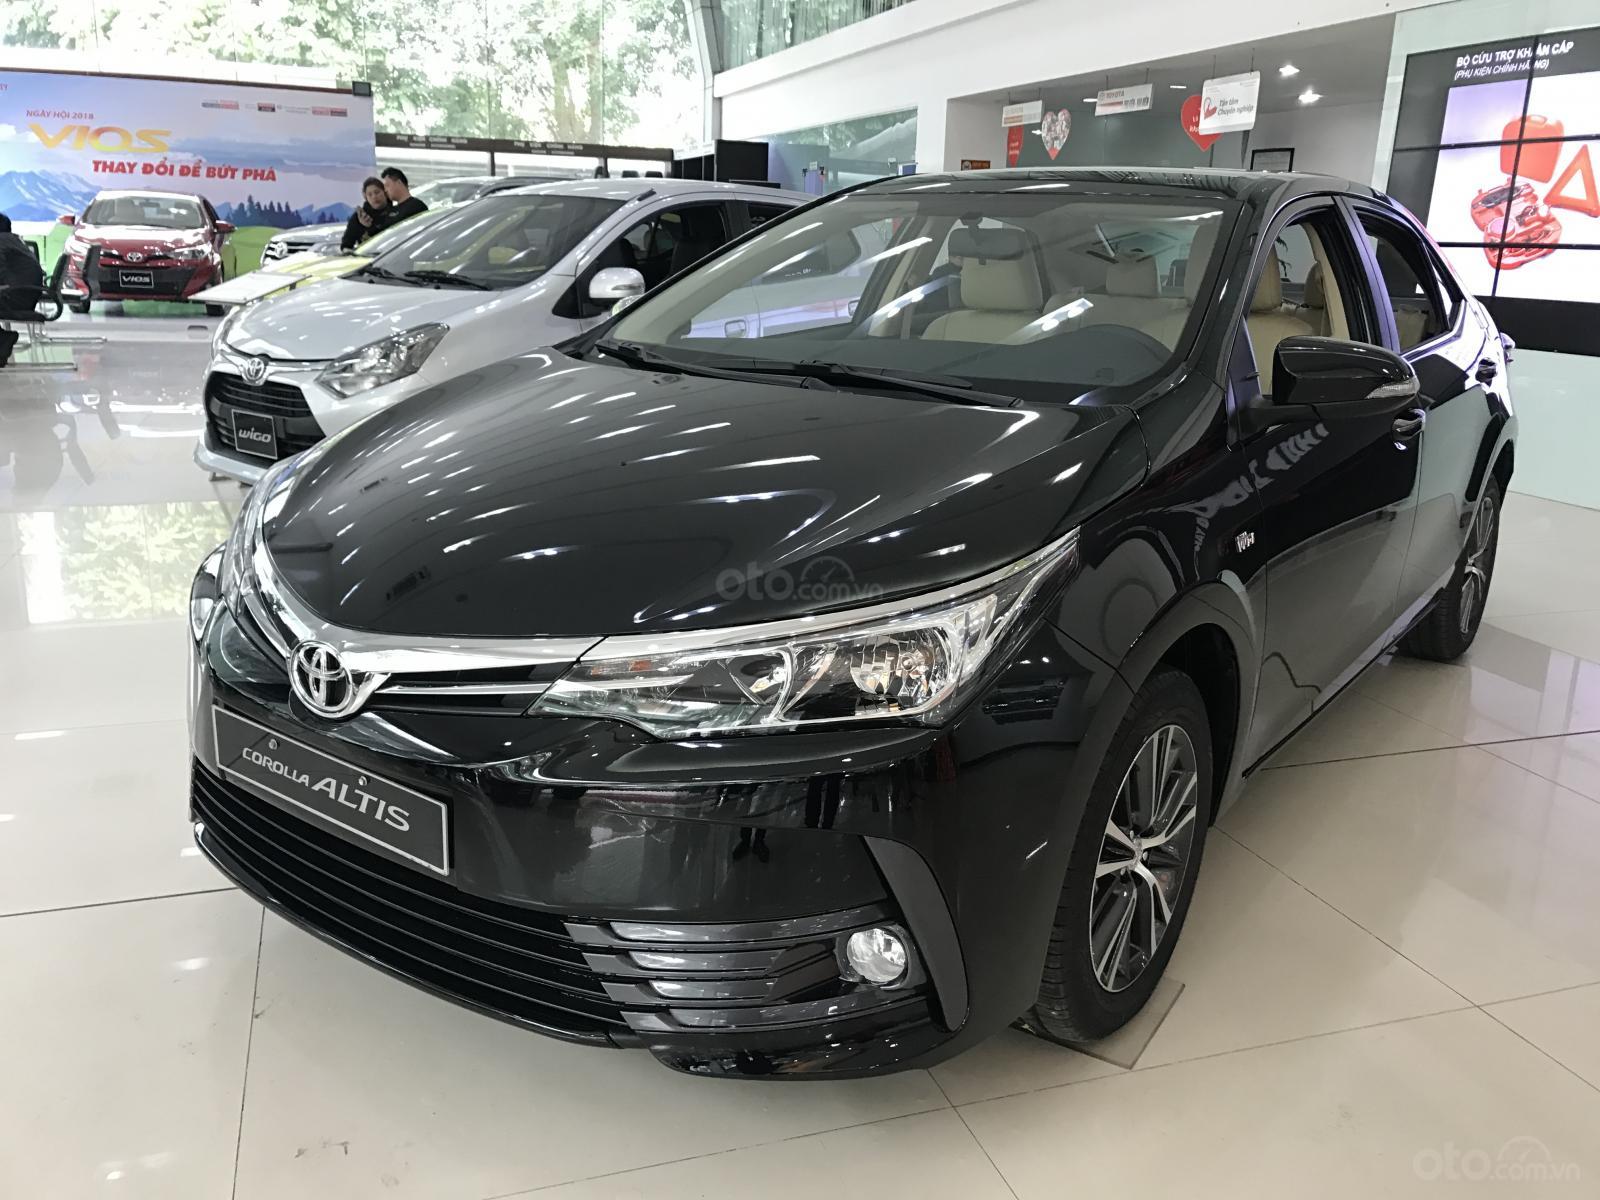 Toyota Corolla Altis cũng nằm trong danh sách ưu đãi của đại lý 